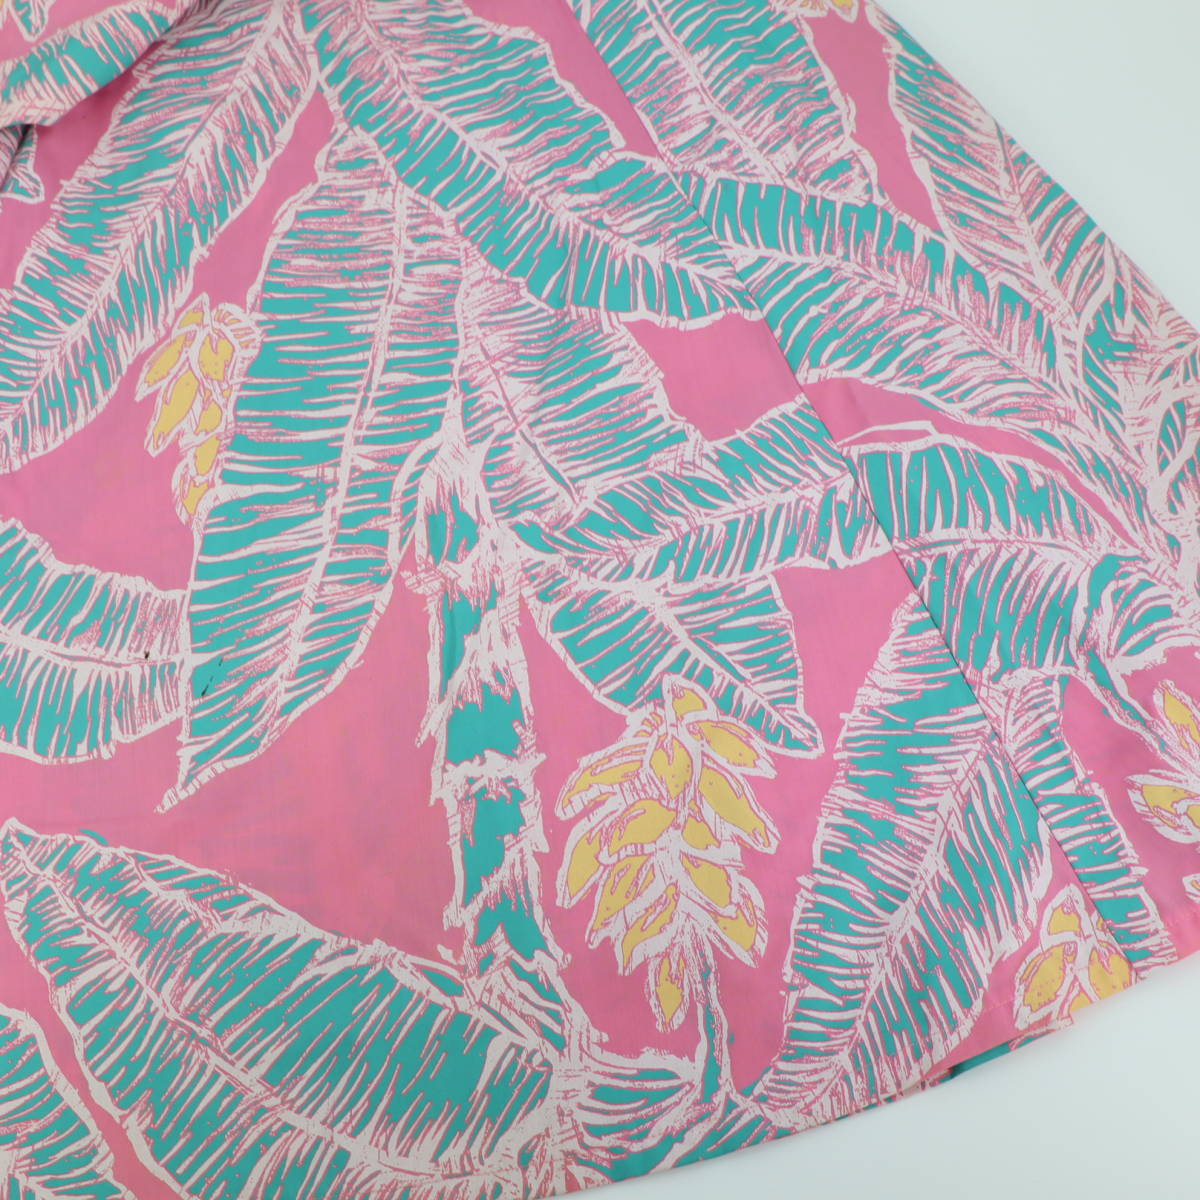 [ бесплатная доставка ][ хула для костюм сделано в Японии скетч способ принт ]ALOHASTANDARDS розовый чай leaf рисунок безрукавка One-piece платье прекрасный товар 